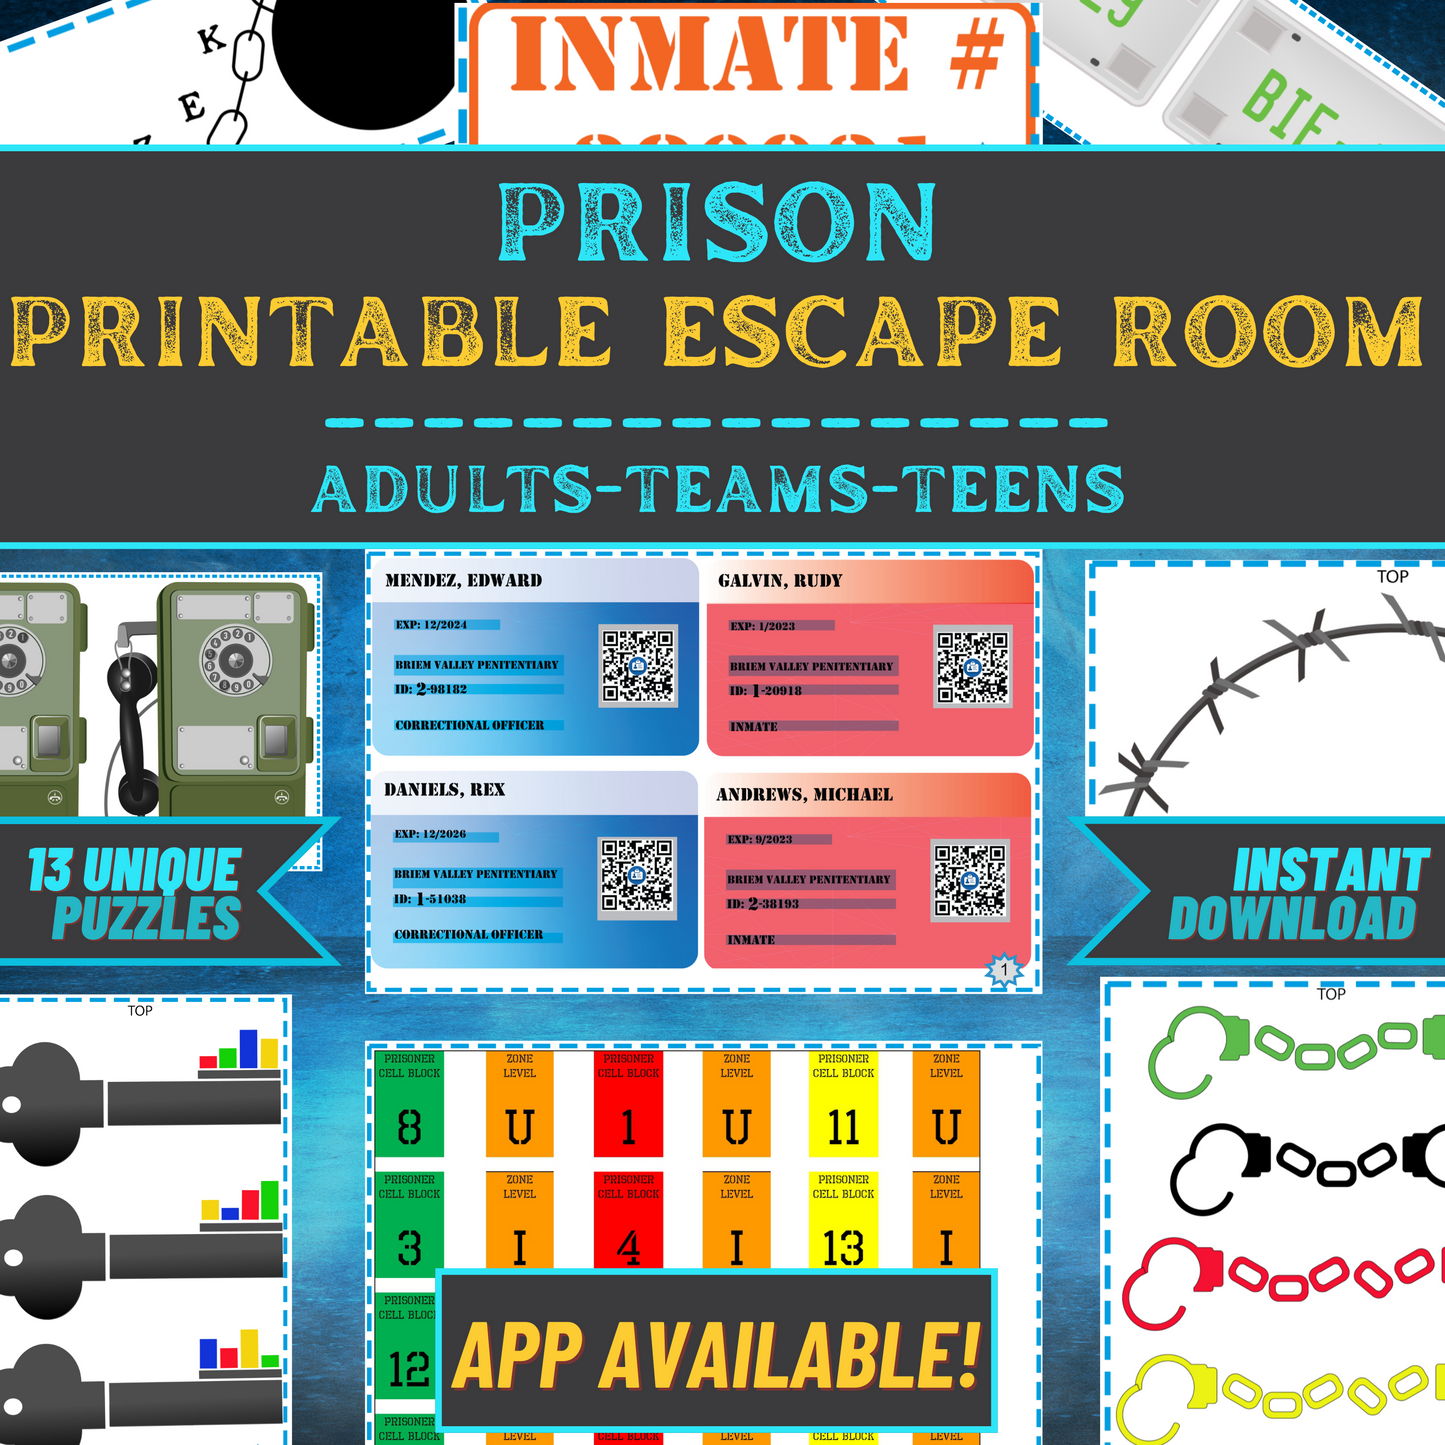 Forgotten Prison - Escape Room Game Printable